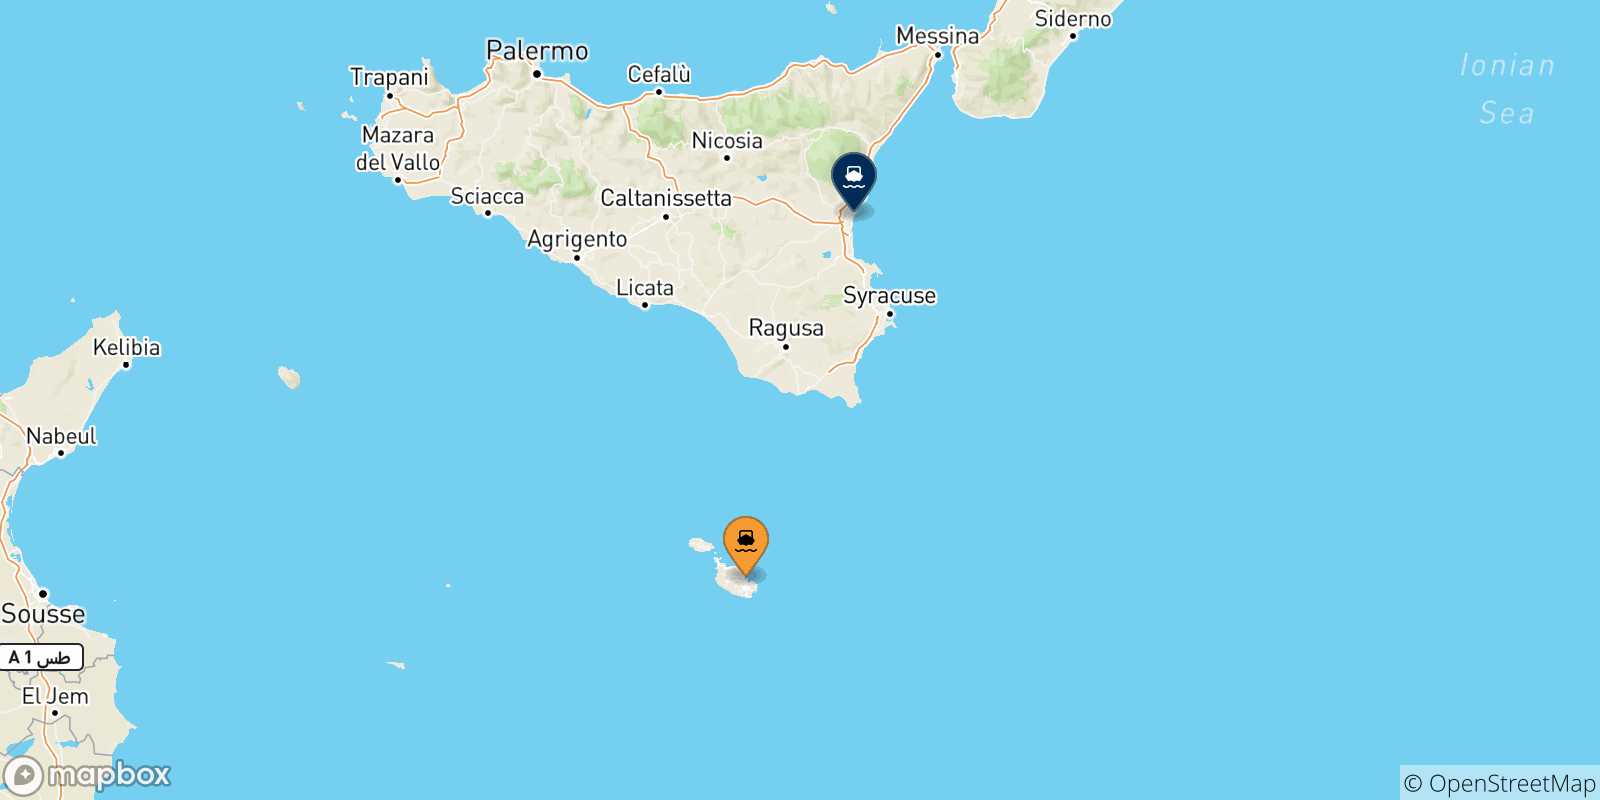 Mappa delle possibili rotte tra Malta e Catania